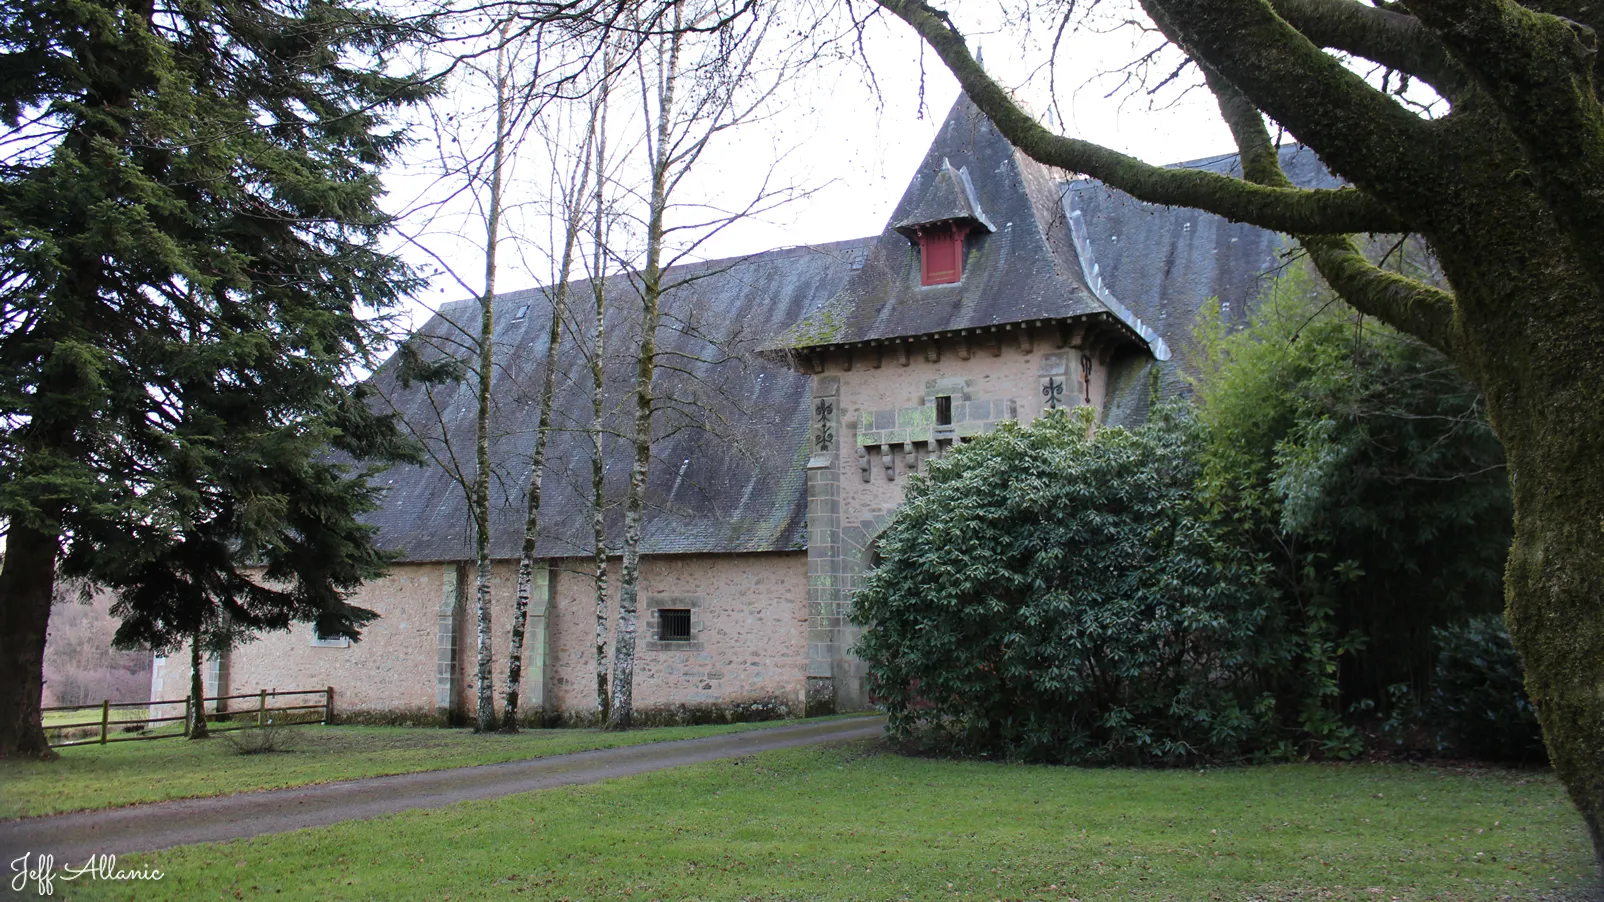 Corrèze découverte - Photo N° 4 - Le château de La farge - 19370 - Chamberet - Monuments historiques - Quelques pas - Autour de vous